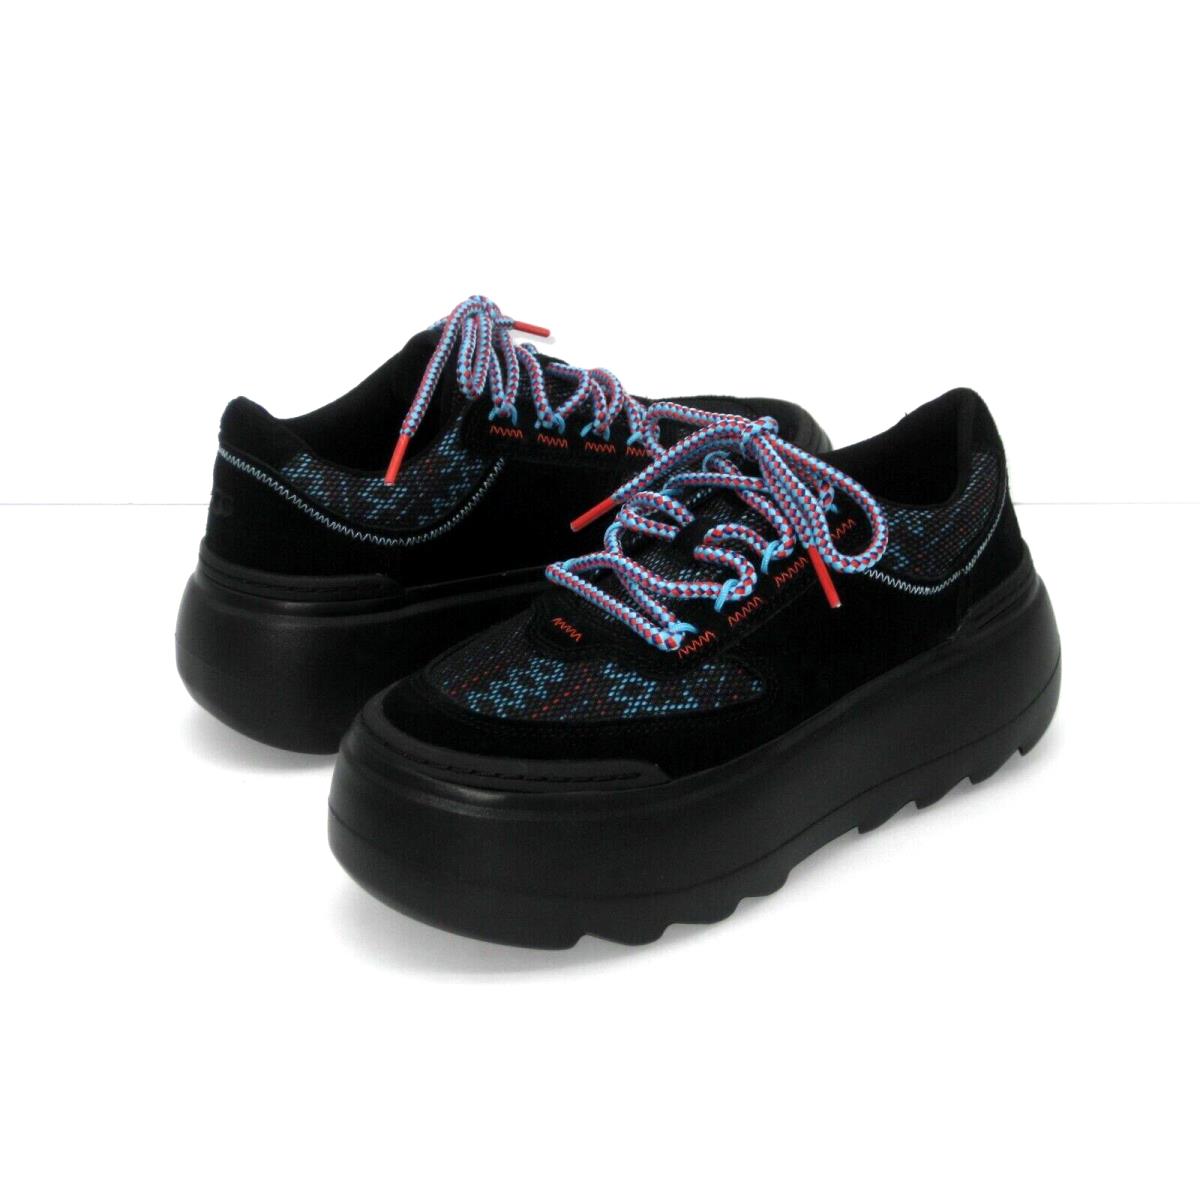 Ugg Marin Mega Lace Women Shoes Black US 8.5 /uk 6.5 /eu 39.5